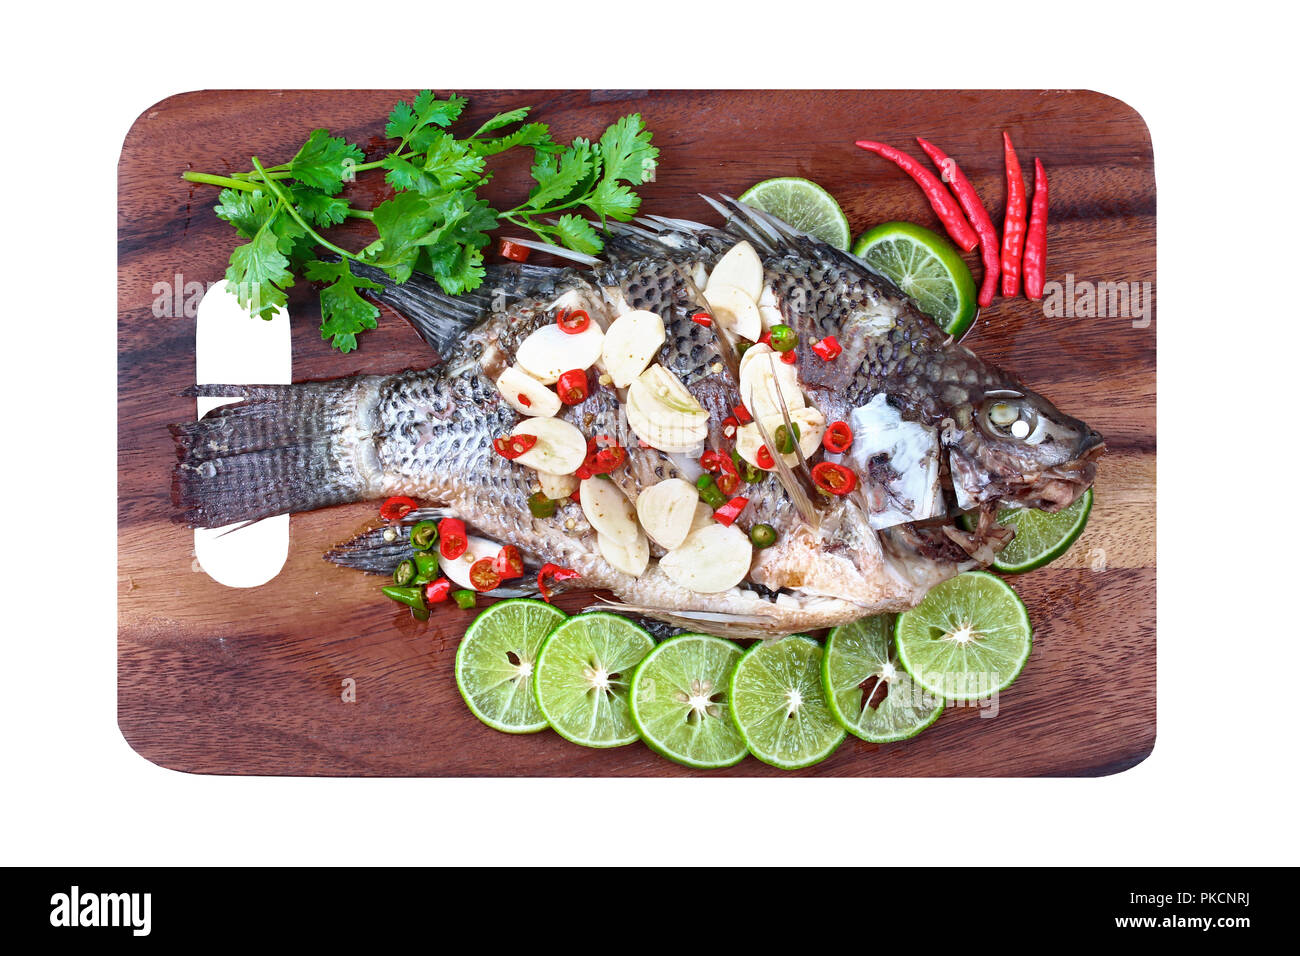 En streaming le poisson Tilapia au citron gingembre aigre épicée en tête et de chili sur butcher servi Appelez Pla Néant Nuang Manoaw en thaï isolé sur fond blanc. Banque D'Images